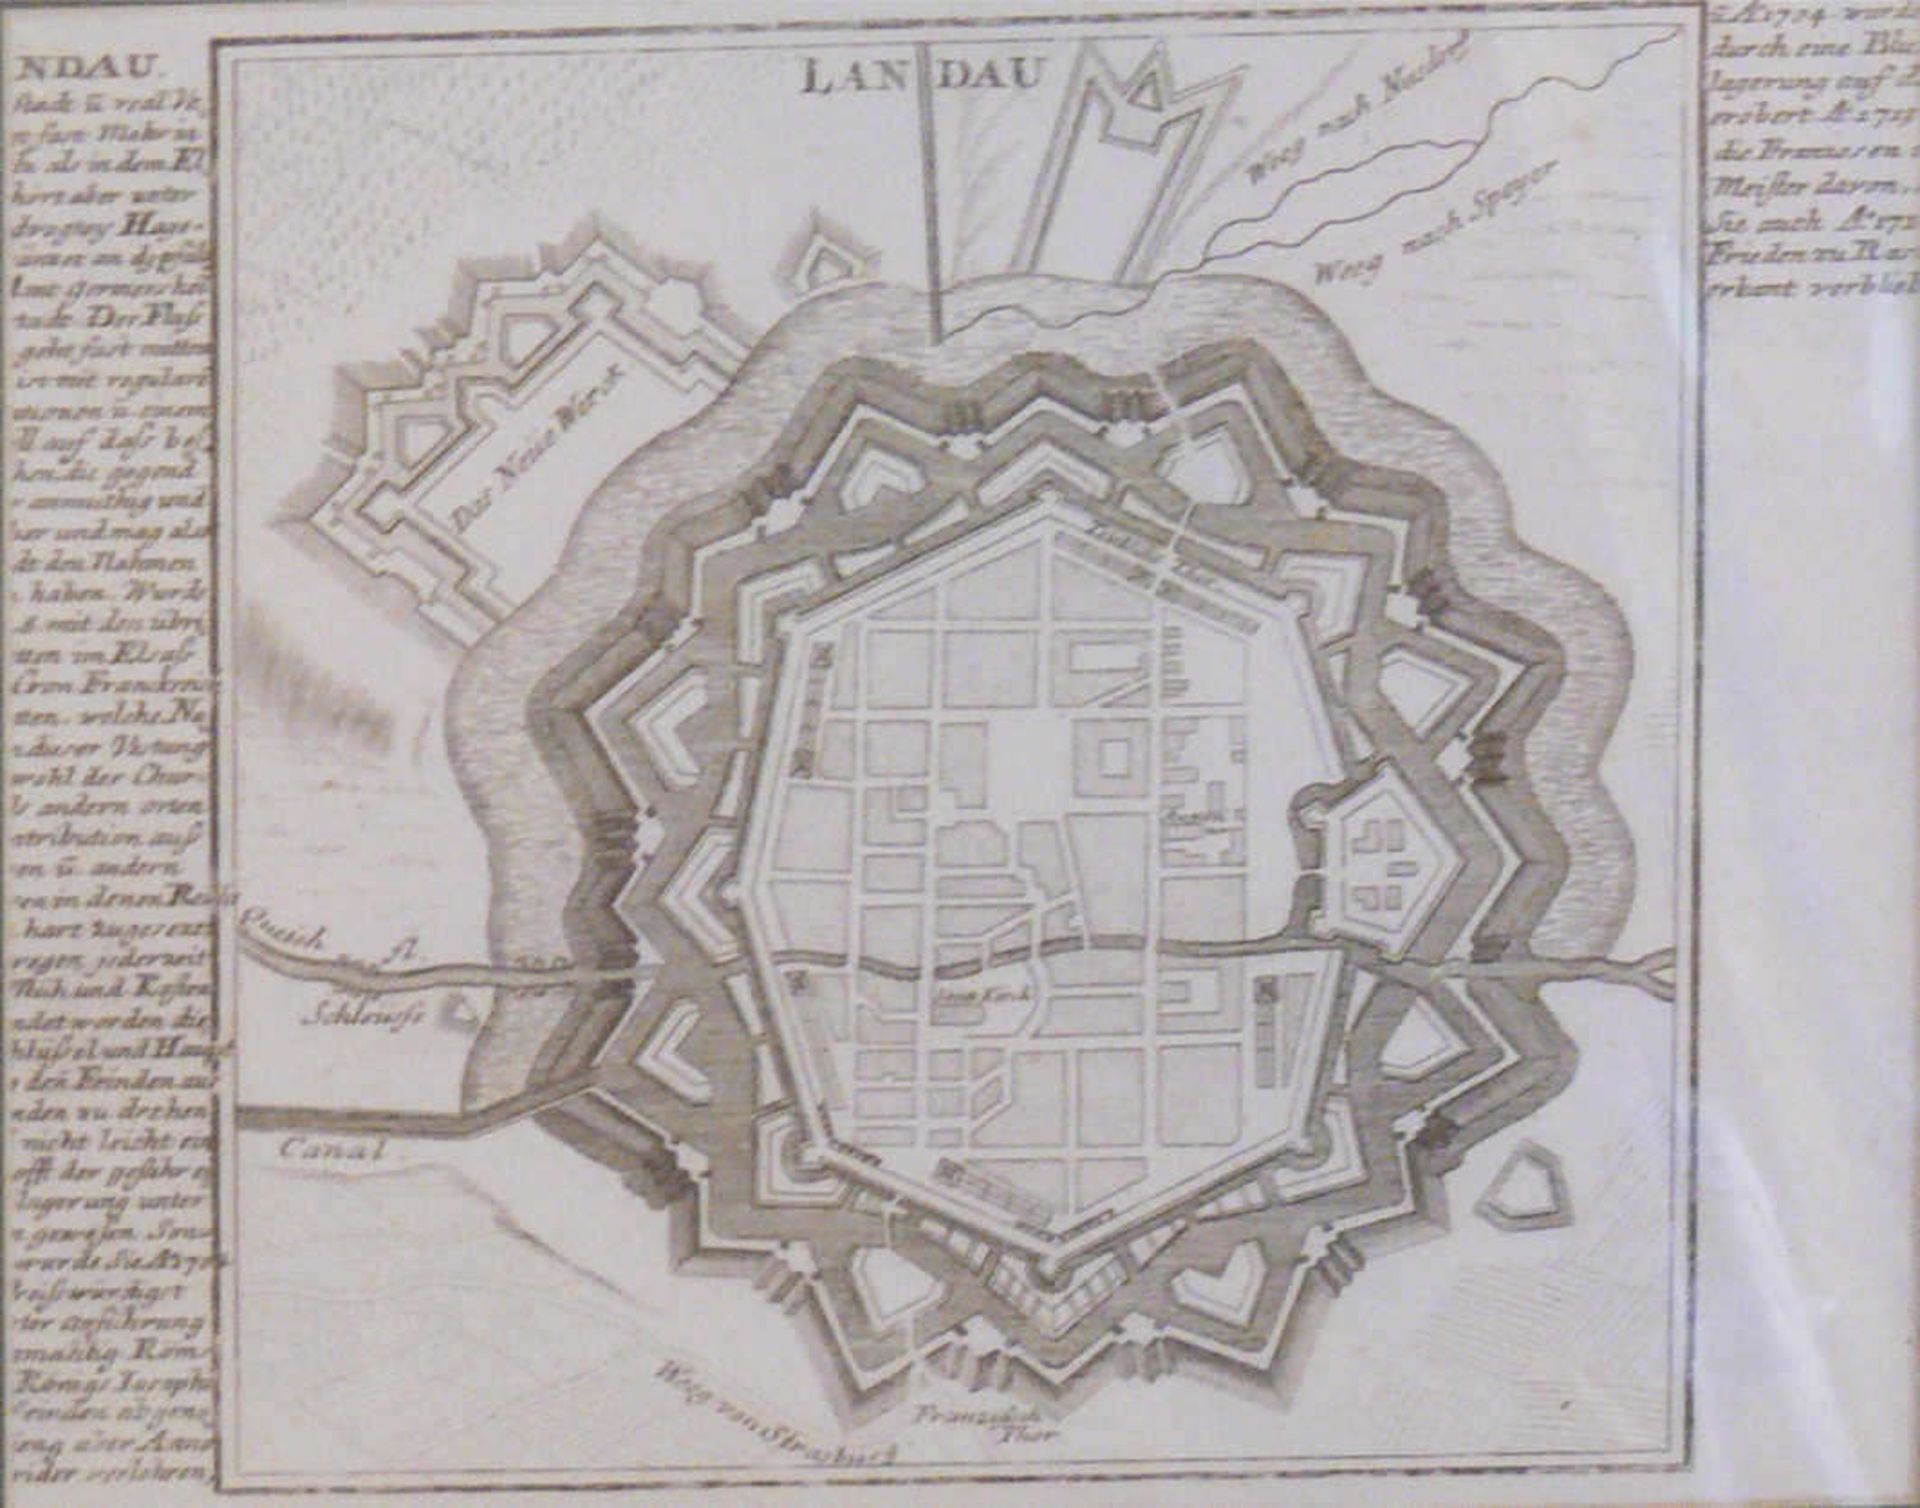 M. Merian ca. 1704, "Die Festung Landau". Kupferstich, links und rechts Erläuterungen zu Landau.